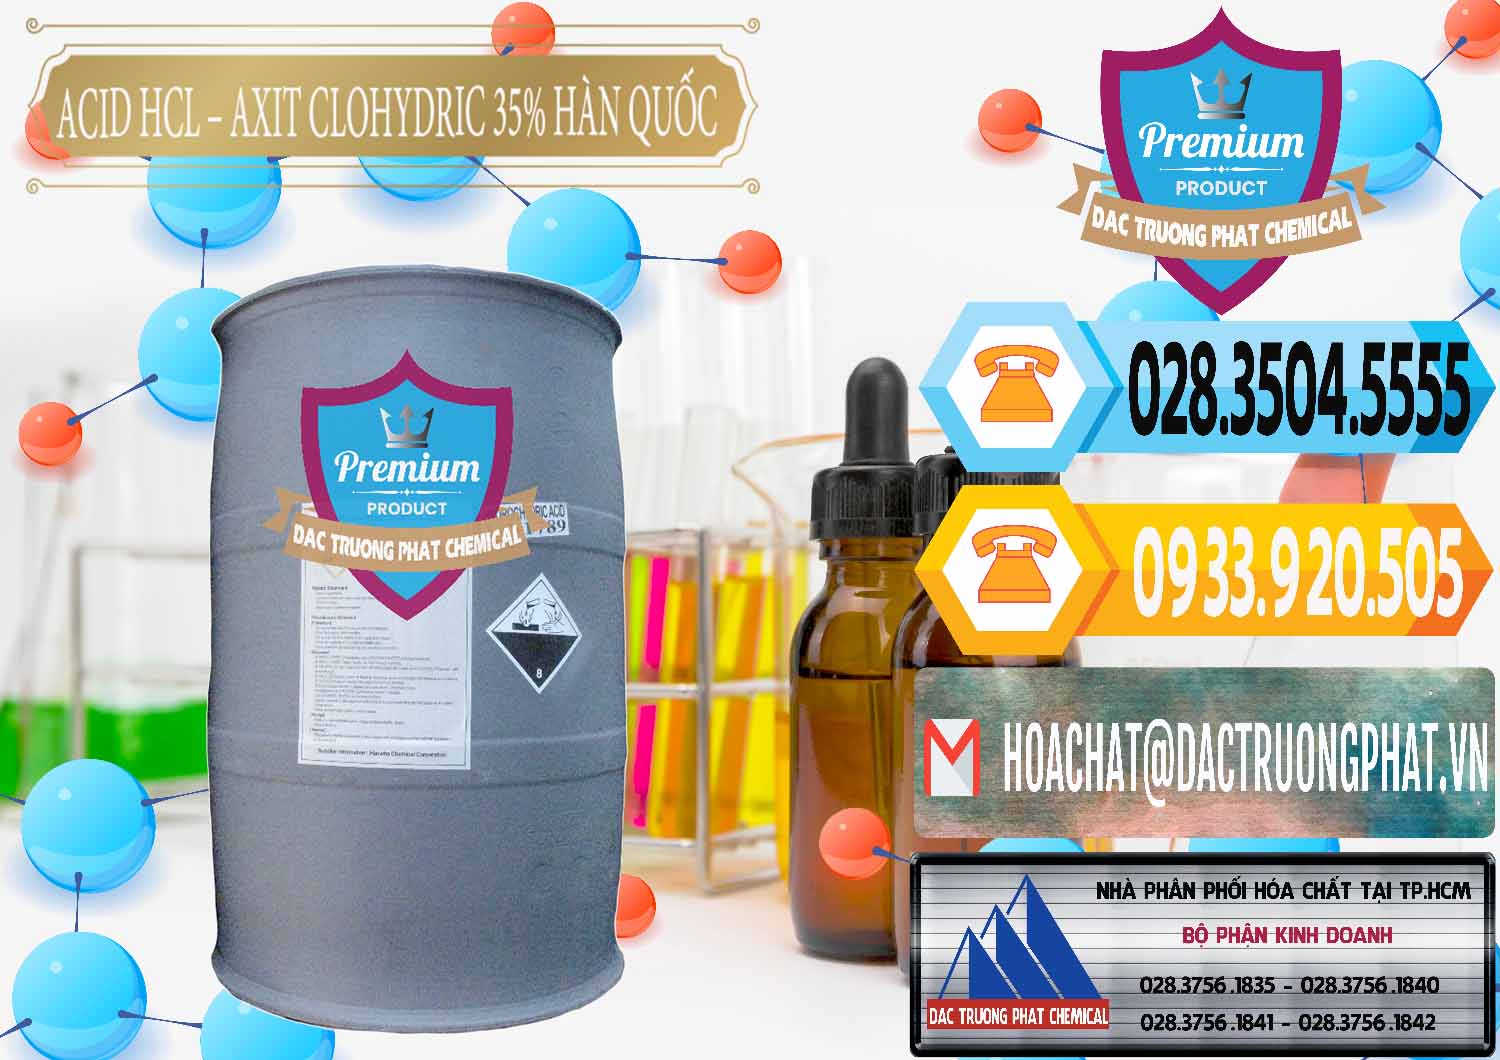 Đơn vị chuyên cung cấp ( bán ) Acid HCL - Axit Cohidric 35% Hàn Quốc Korea - 0011 - Công ty cung cấp ( nhập khẩu ) hóa chất tại TP.HCM - hoachattayrua.net